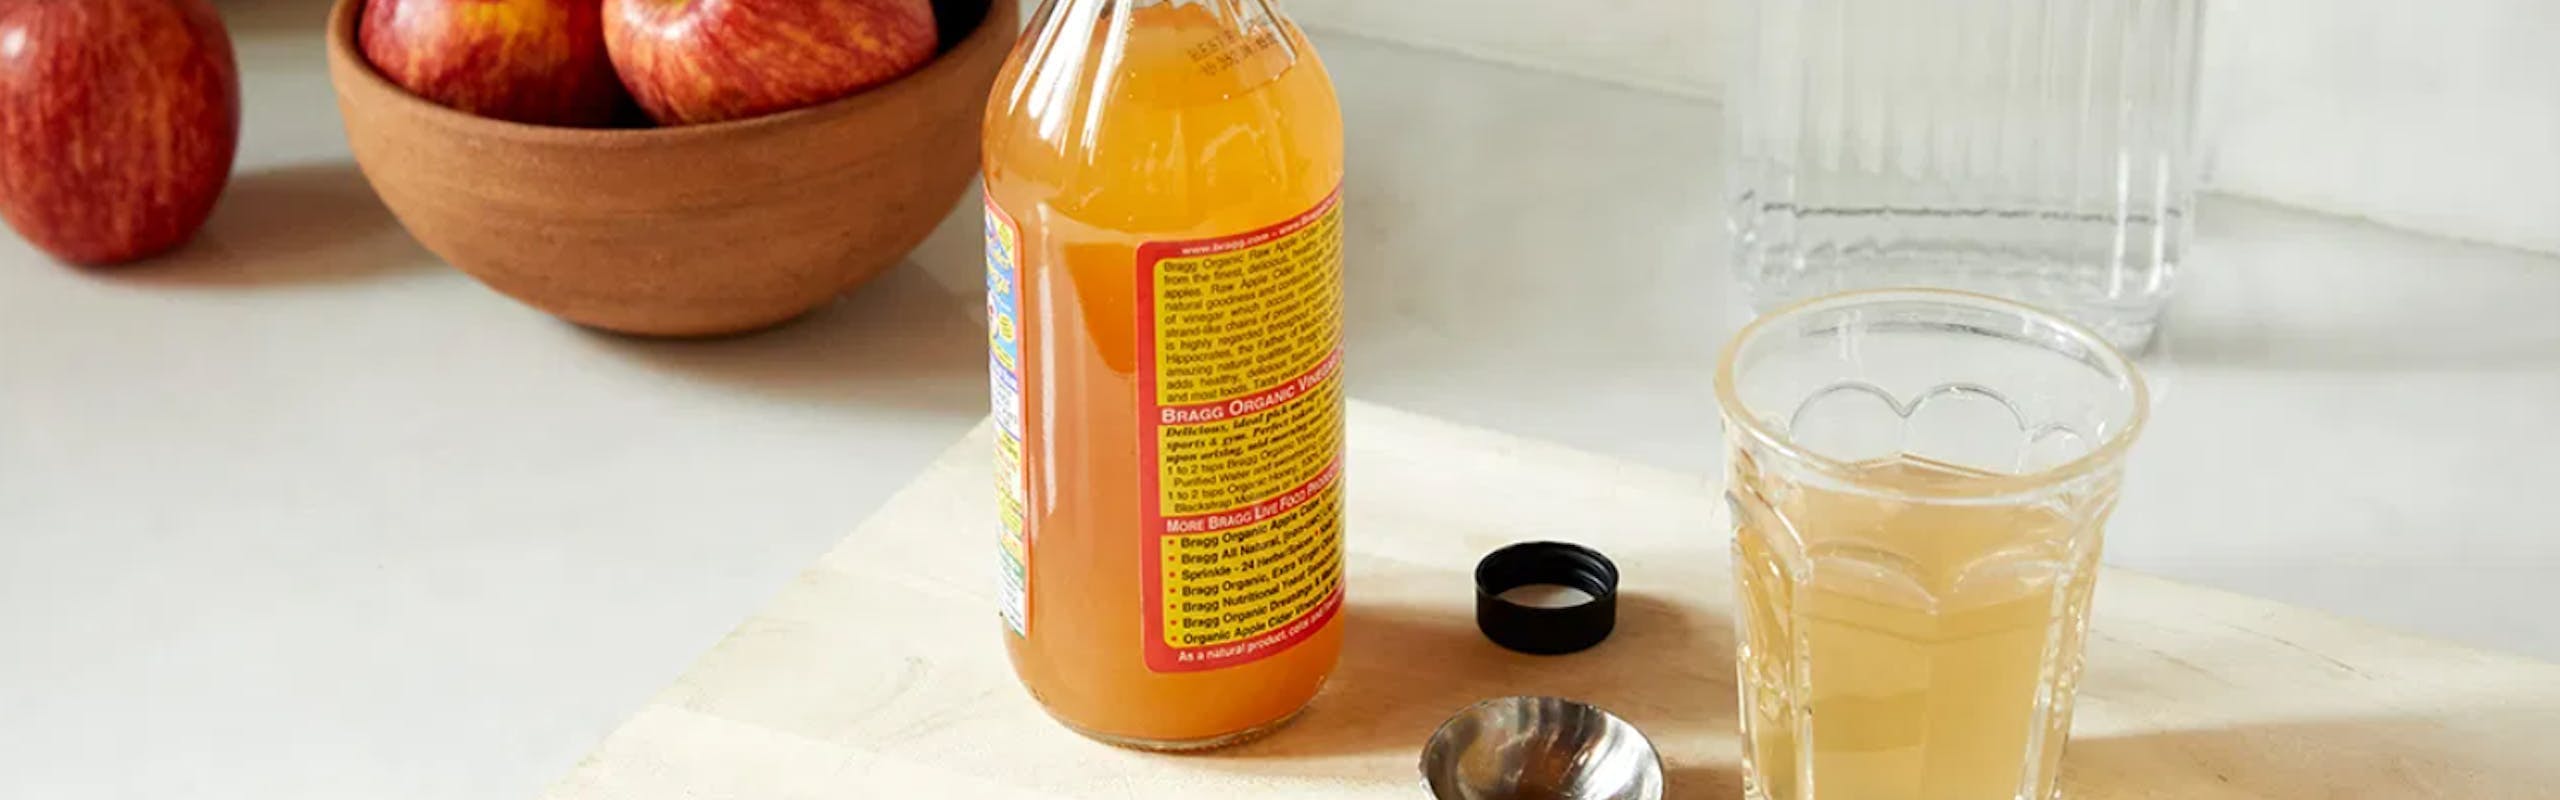 apple-cider-vinegar-best-uses.png